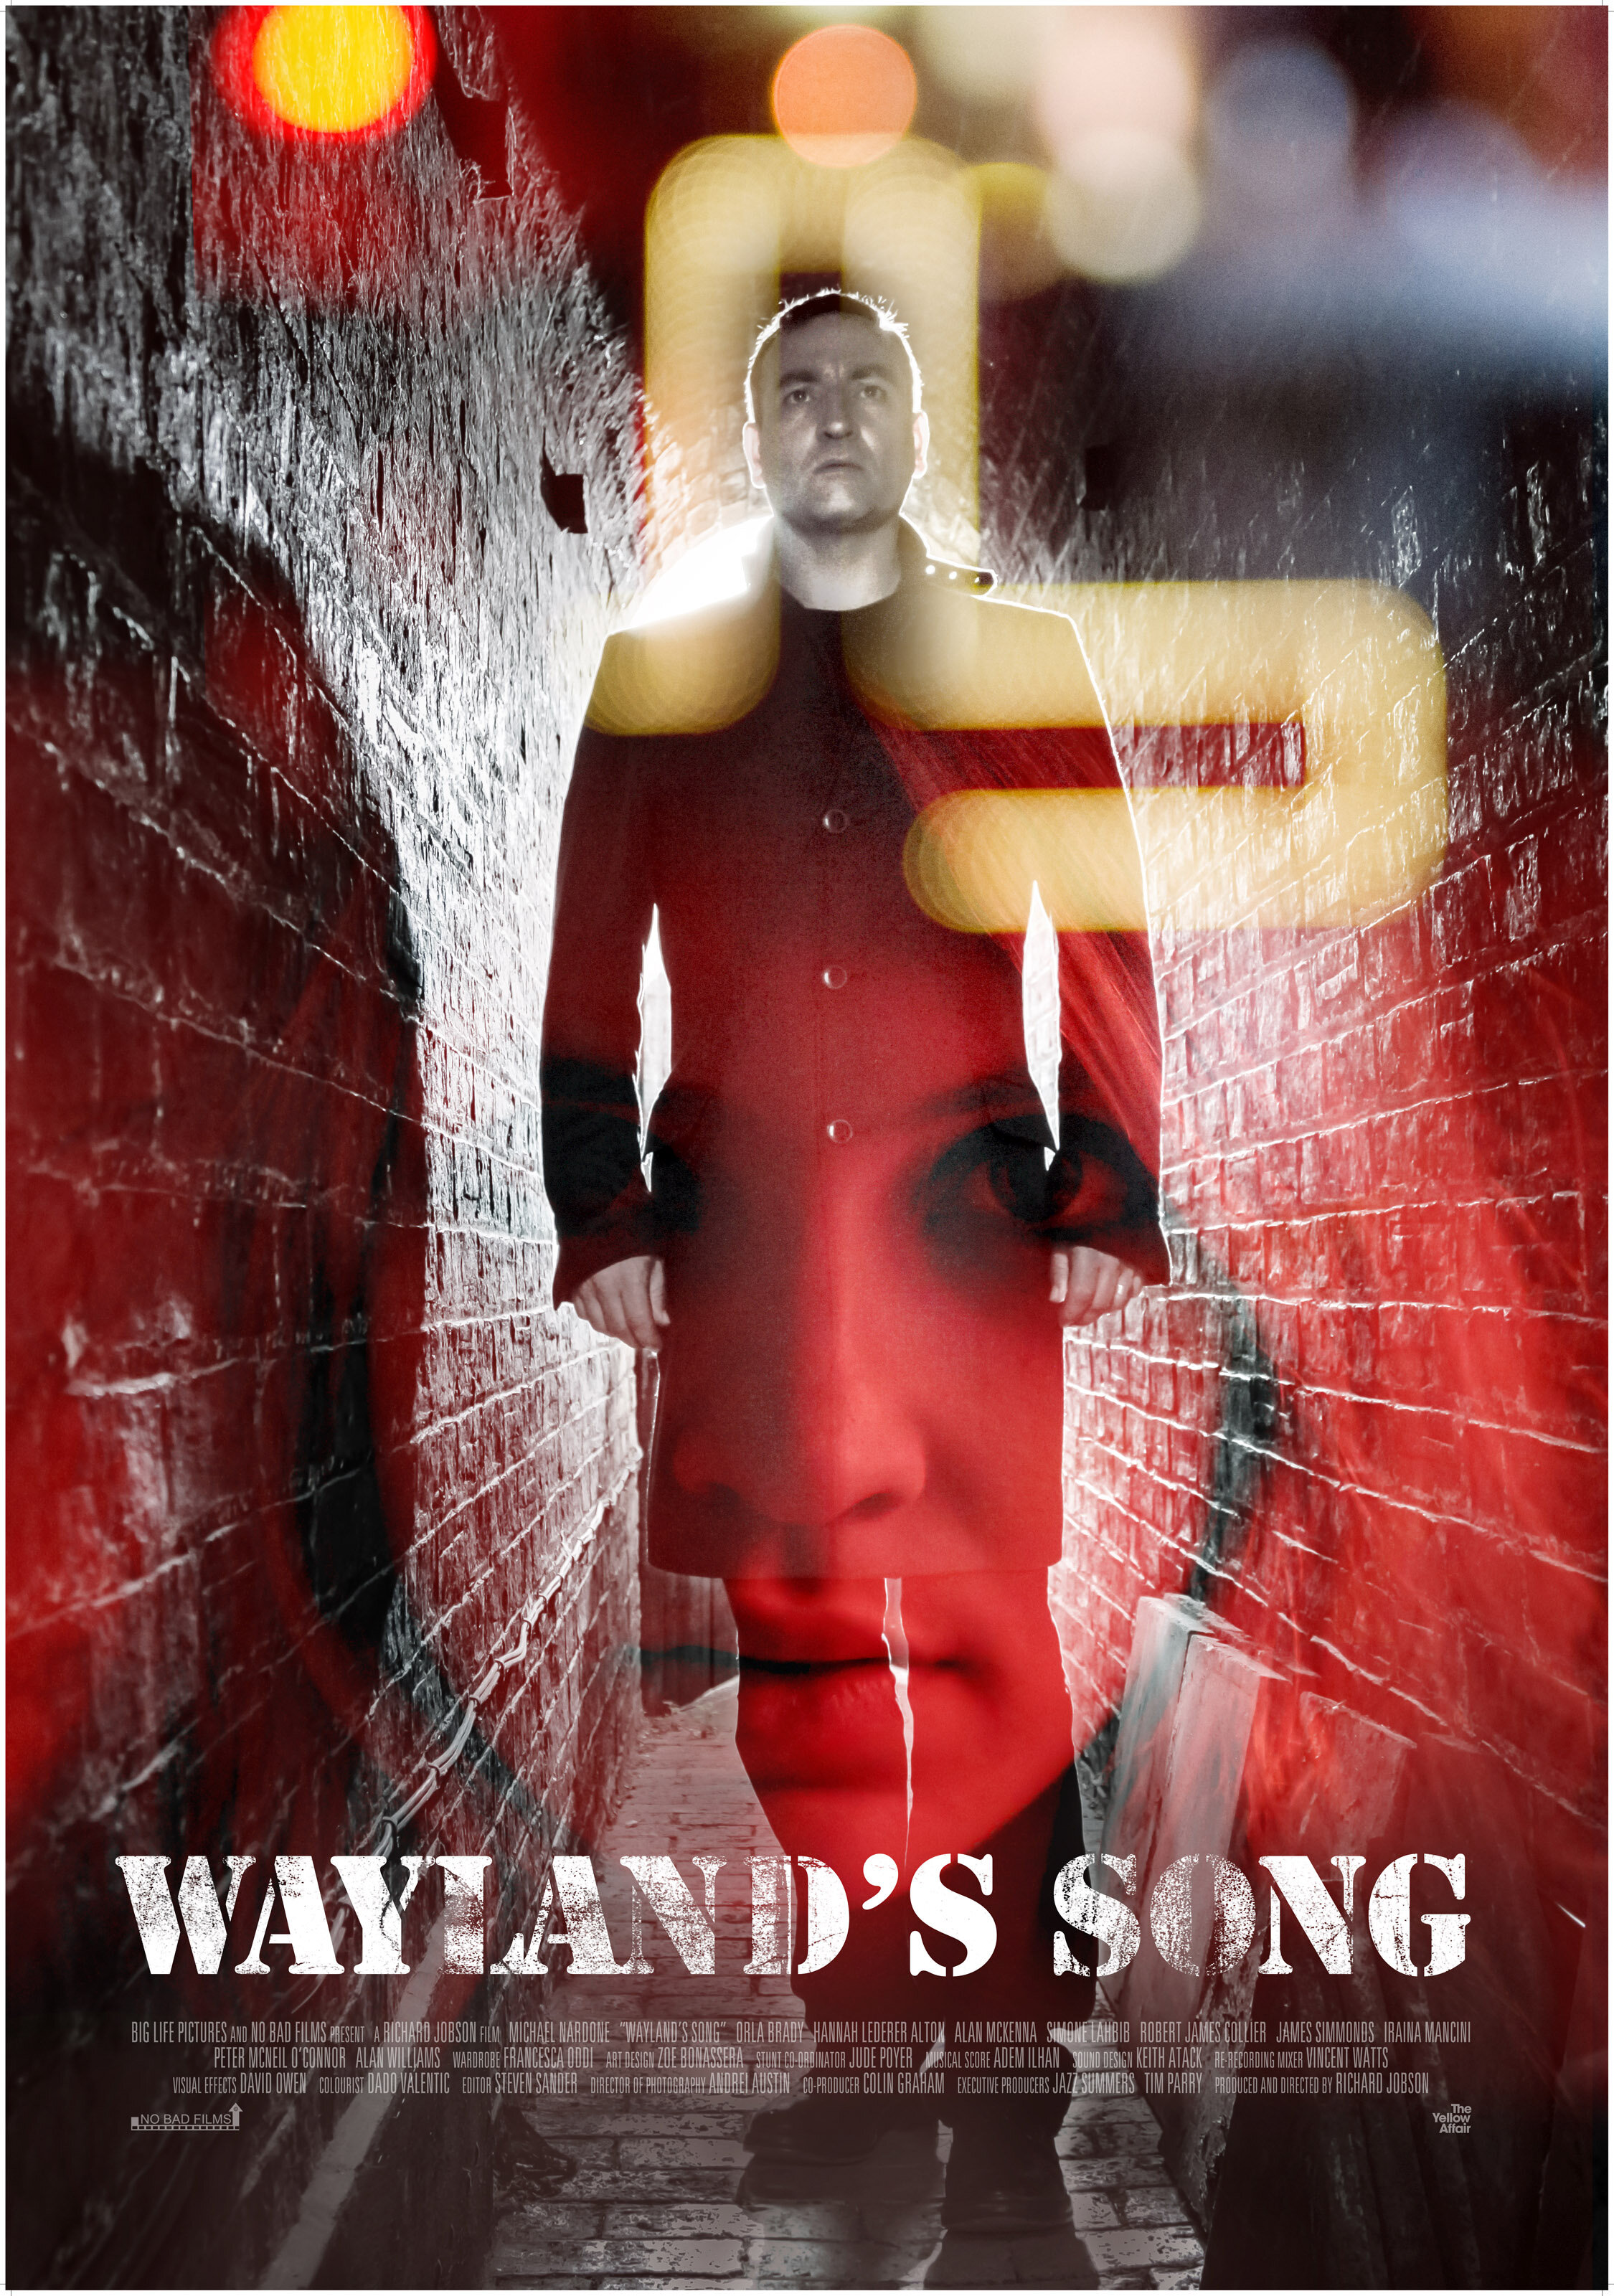 Waylands Song